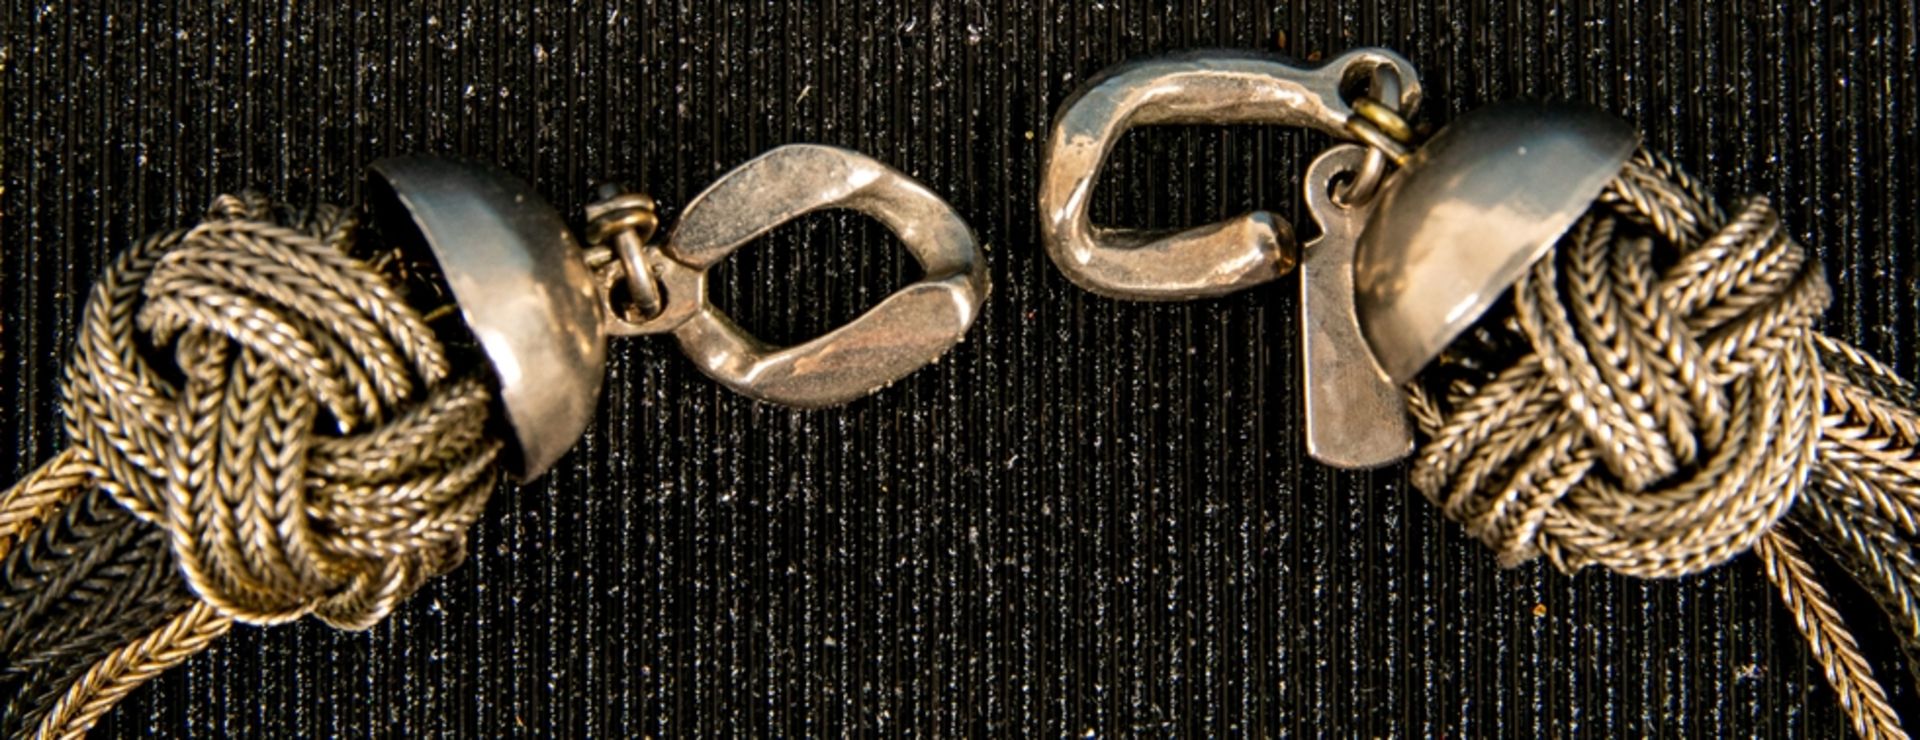 Achtsträngige "YVES-SAINT-LAURENT" Halskette, silberfarbige bzw. geschwärzte, stellenweise verknote - Image 2 of 5